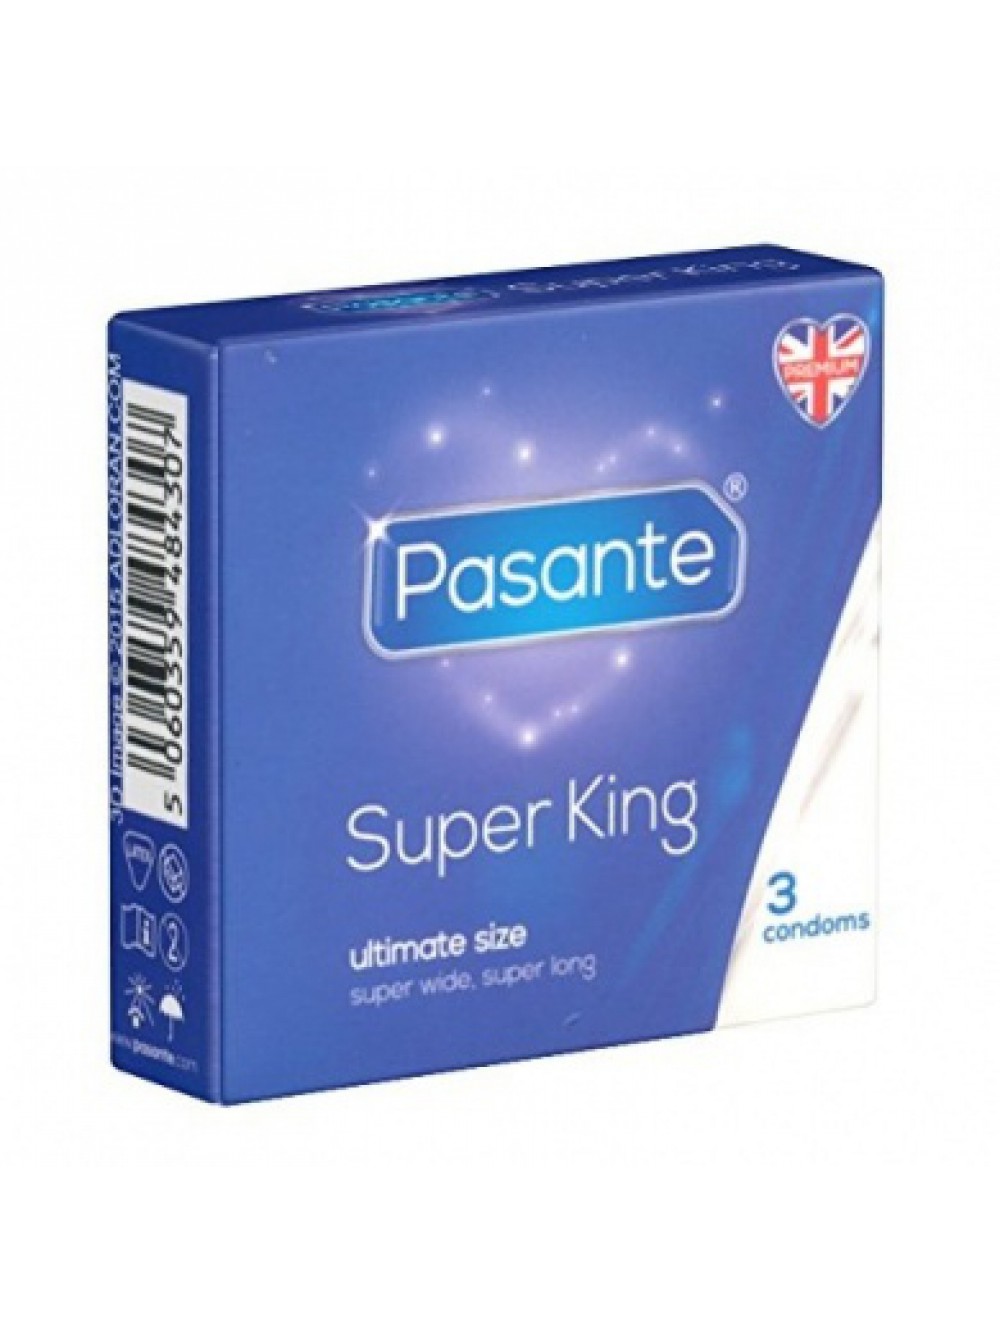 Pasante Super King size 3 p. condoms 5060359484307